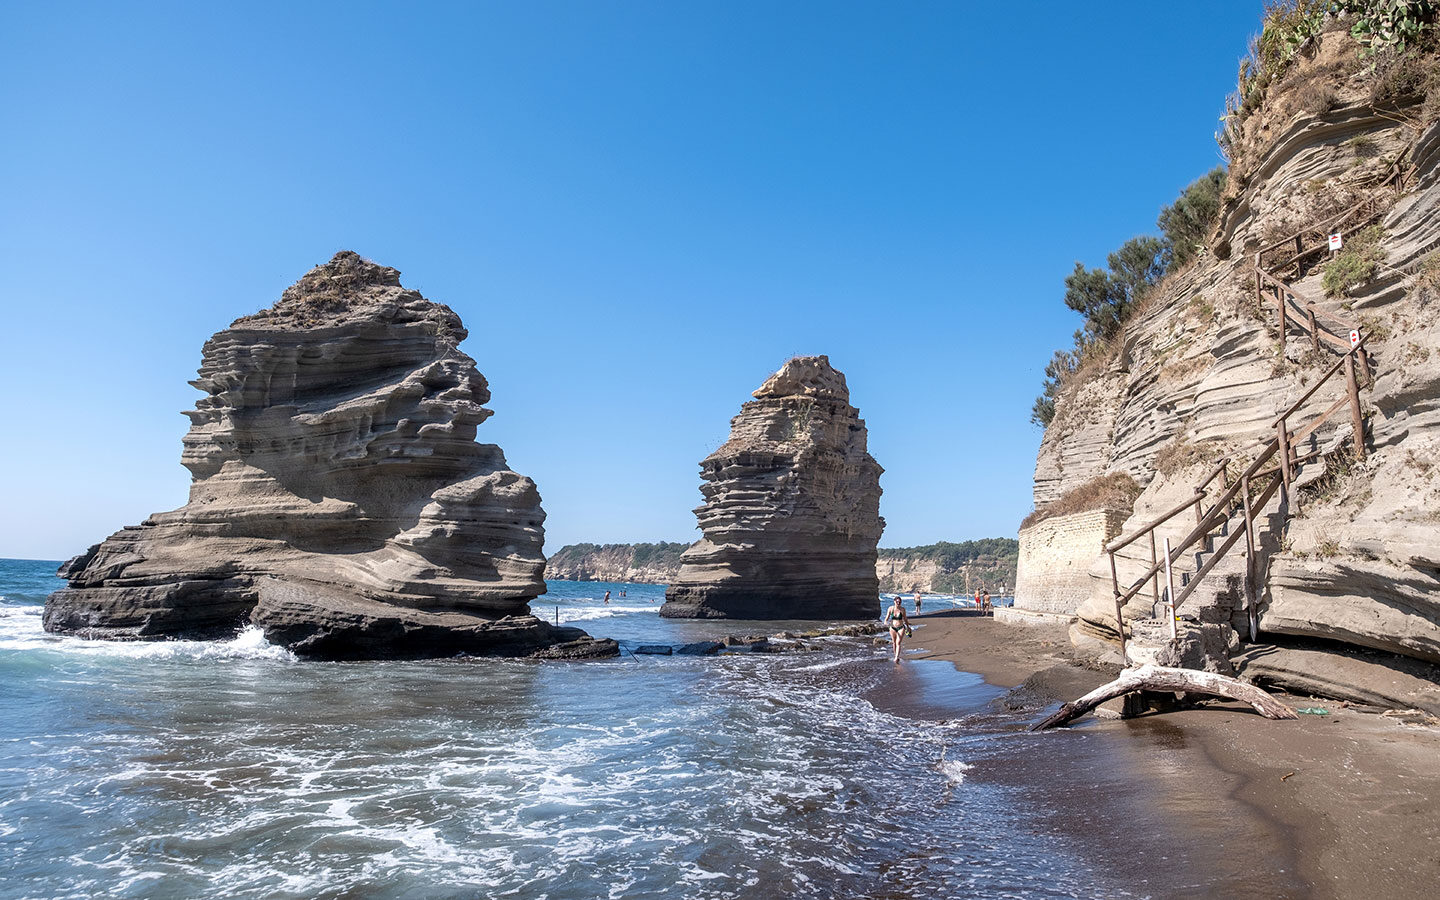 The Faraglioni di Procida rock stacks on Chiaiolella beach in Procida